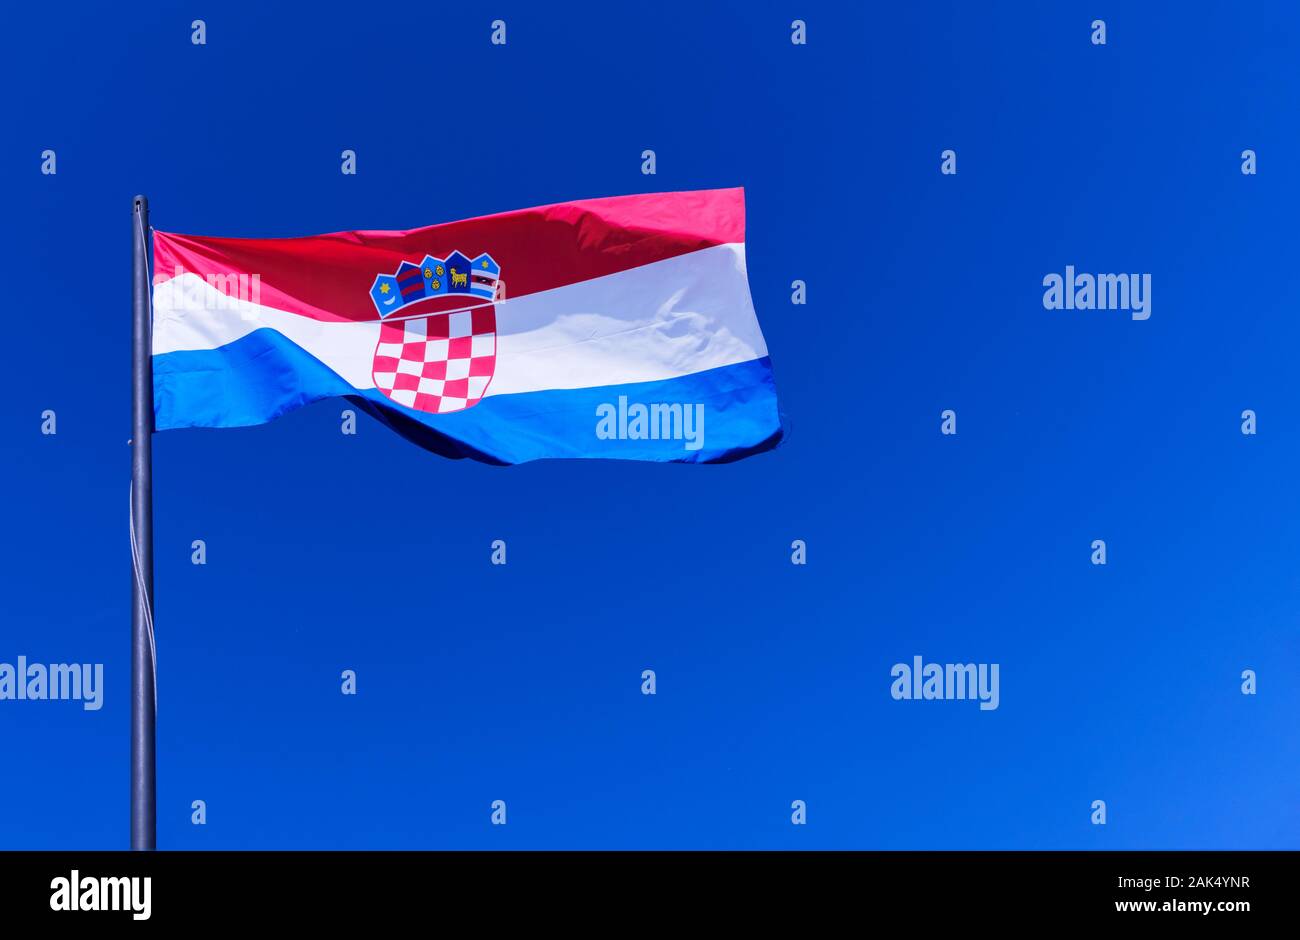 Die kroatische Nationalflagge, oder Tricolor, die vollständig gegen einen strahlend blauen Himmel fliegt. Das kroatische Wappen ist deutlich sichtbar Stockfoto